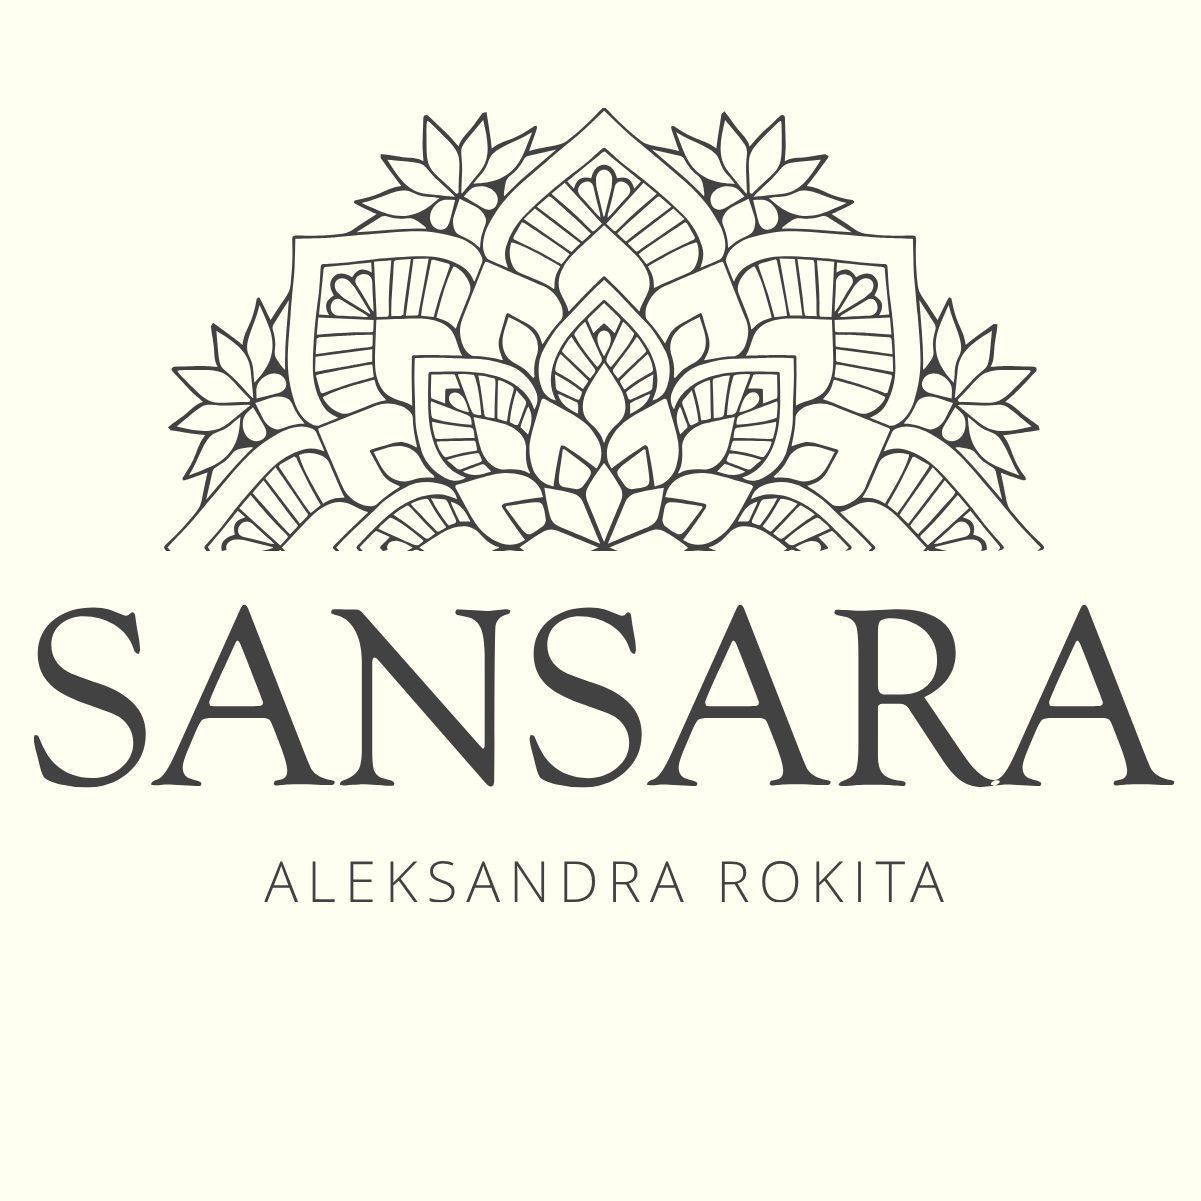 Sansara - Aleksandra Rokita, Gołębia 85, 4, 85-309, Bydgoszcz